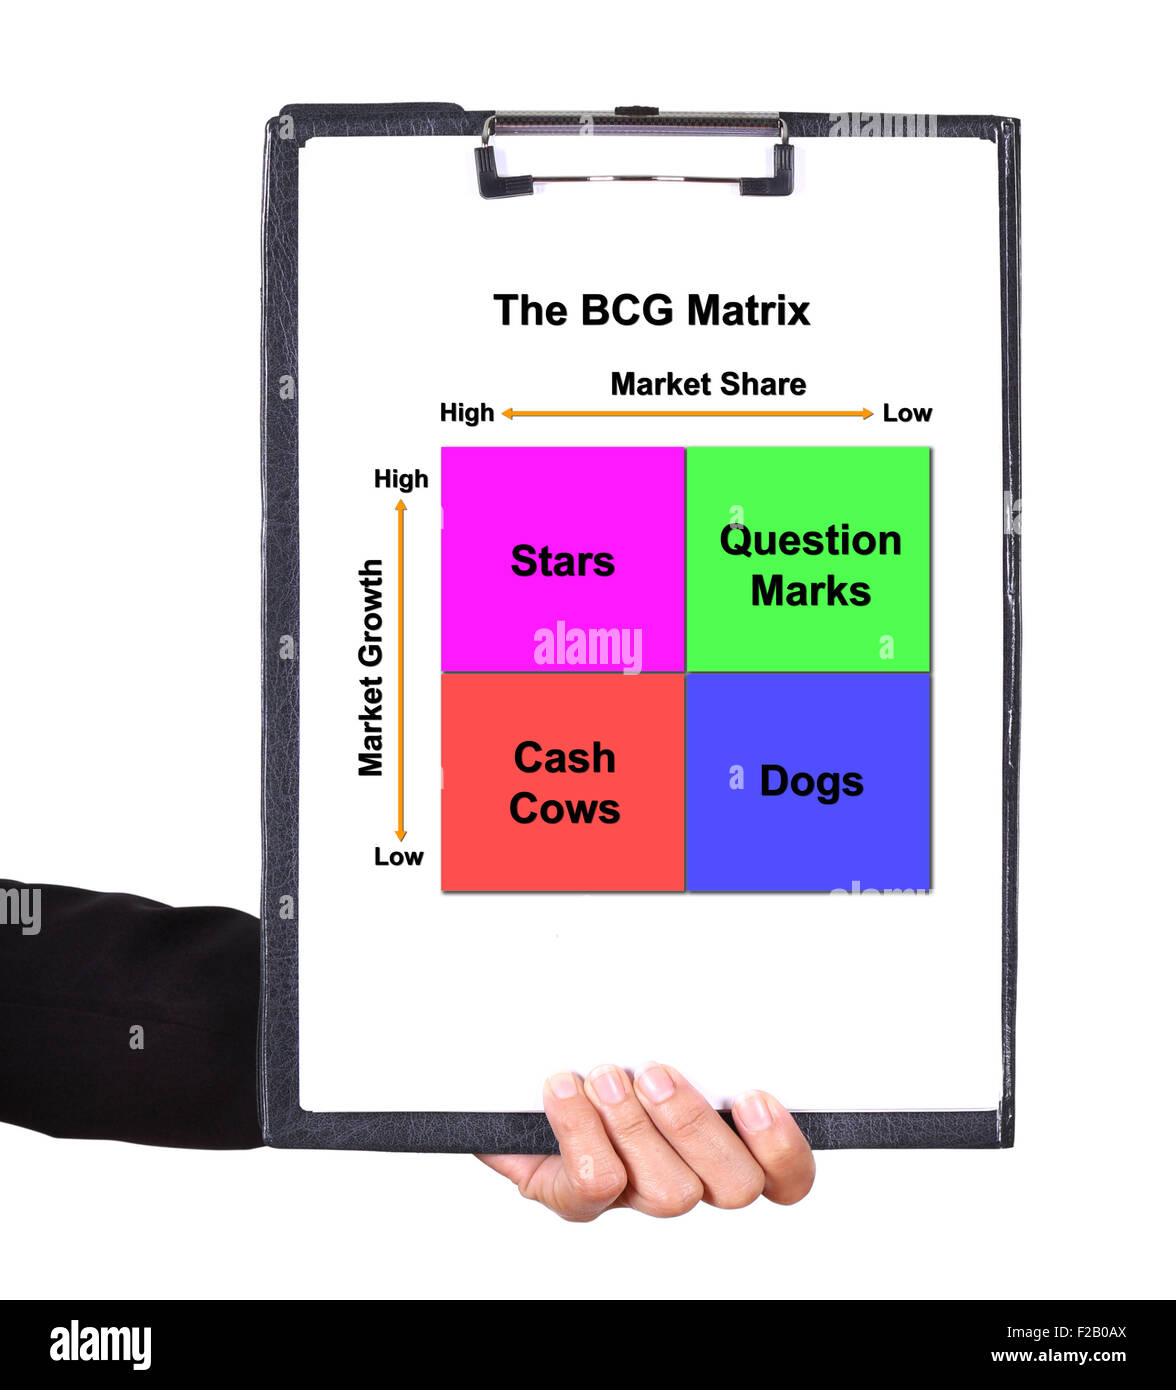 Tenir la main d'un presse-papiers avec la carte de la matrice BCG (concept de commercialisation) Banque D'Images